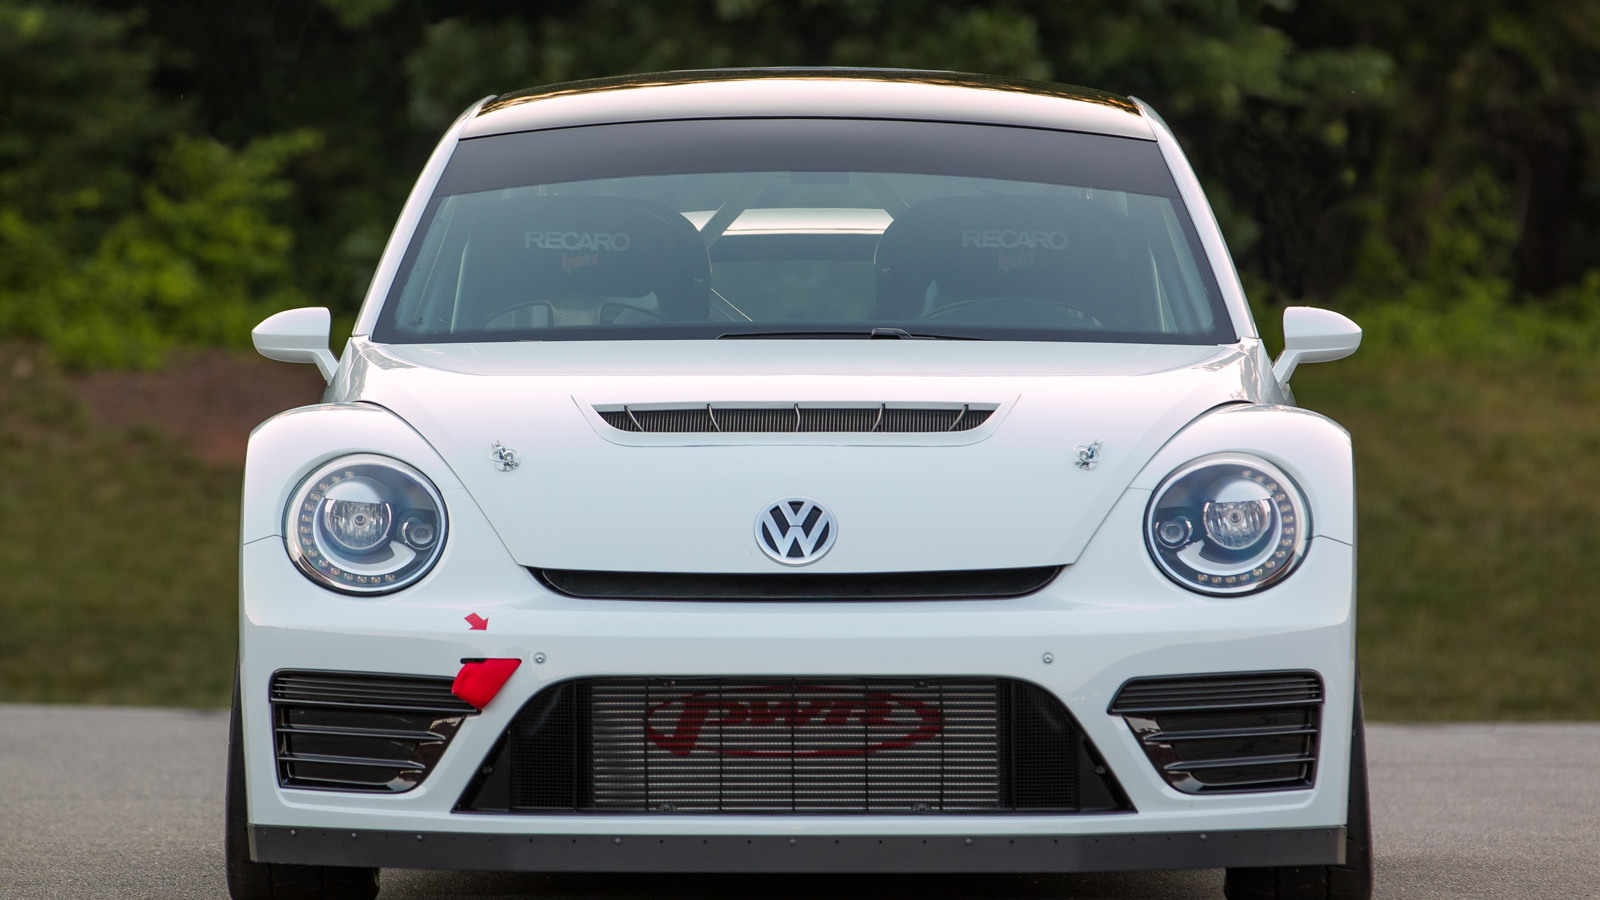 2014 Volkswagen Beetle Global Rallycross Championship car